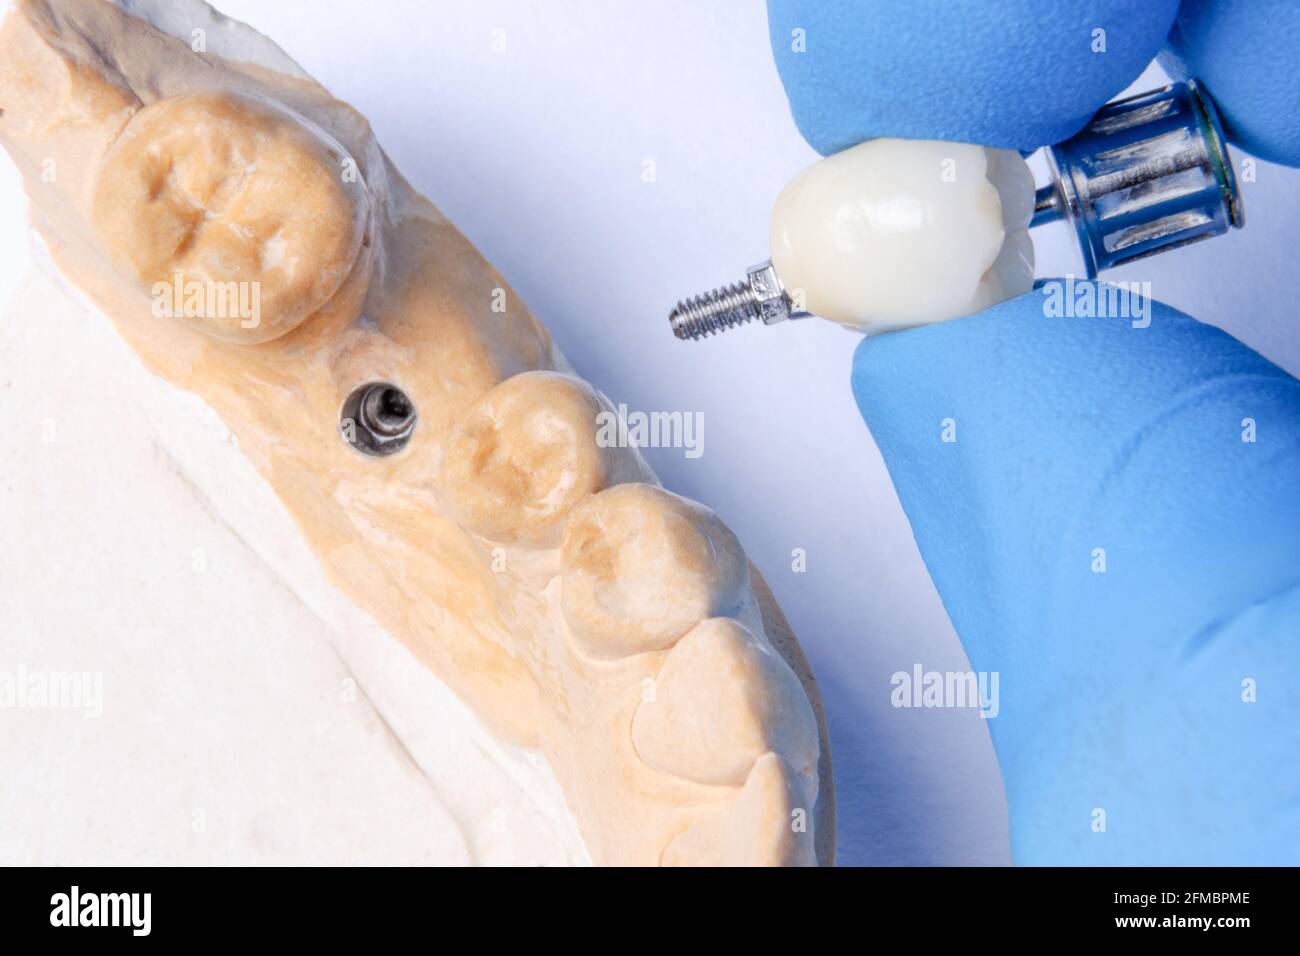 Die Hand des Zahnarztes hält eine Keramikkrone zur Fixierung auf dem Implantat. Zahnmodell mit Zahnimplantat Stockfoto